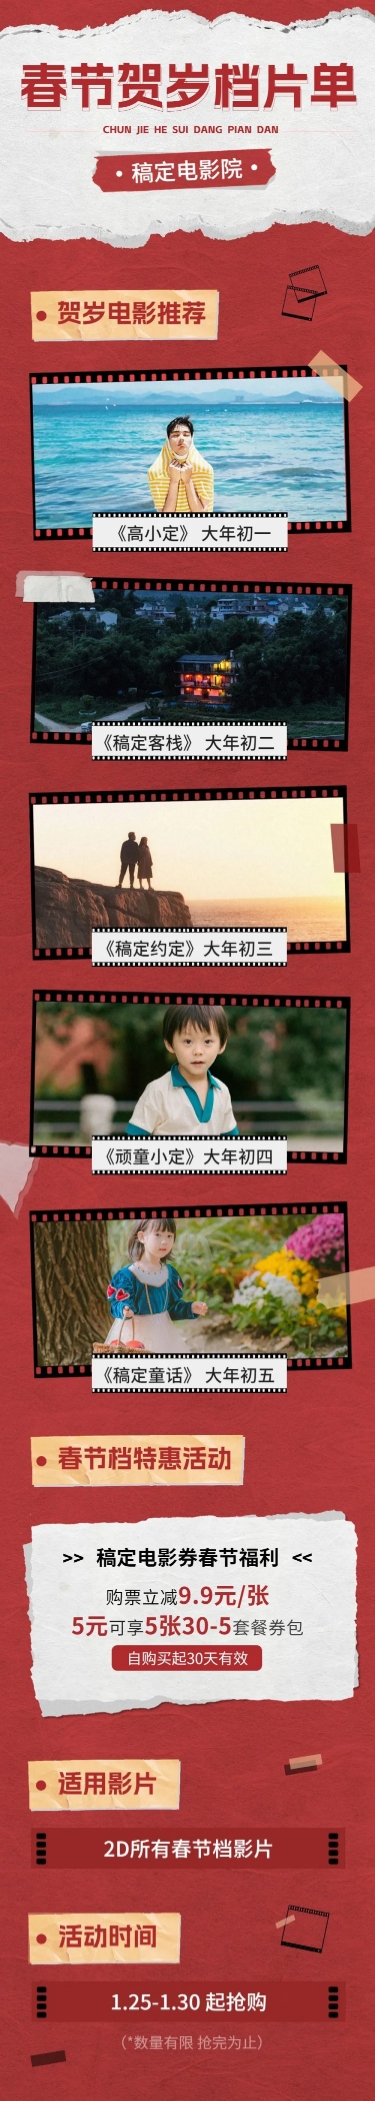 春节电影院促销活动宣传长图预览效果